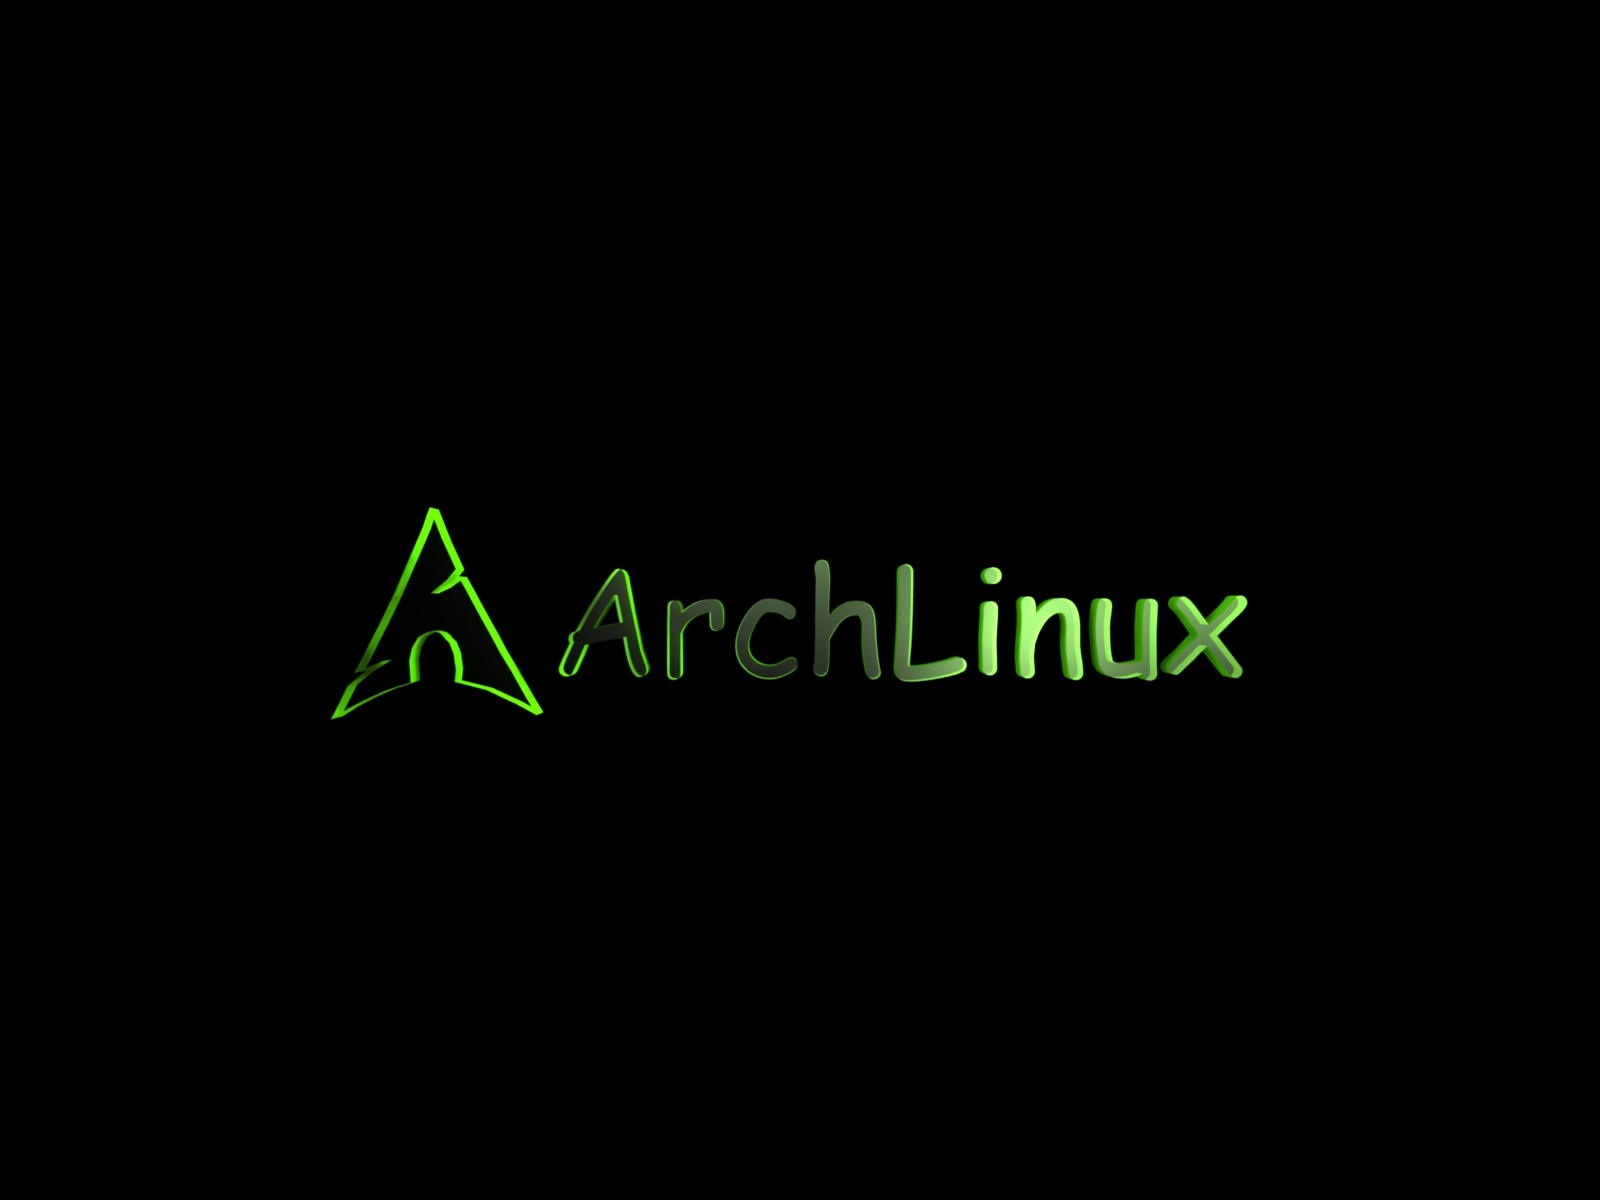 Green Arch Linux wallpaper by Goten22.